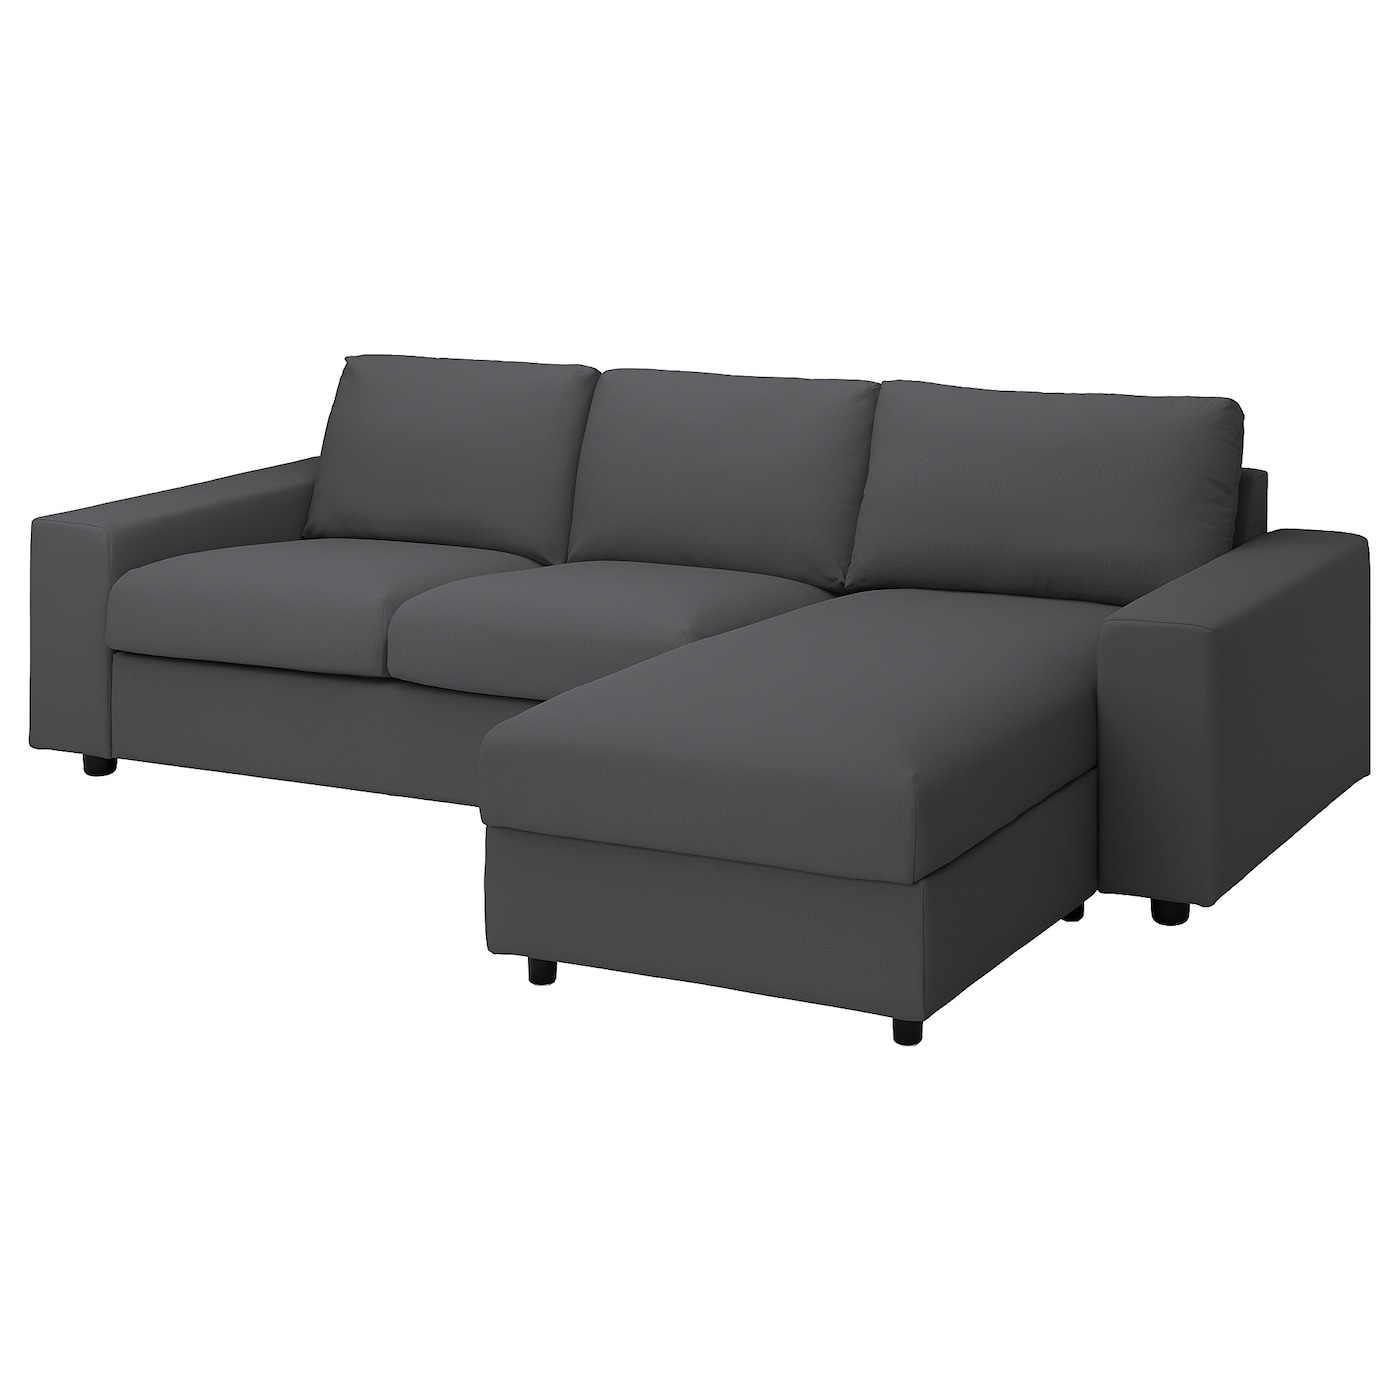 ВИМЛЕ 3-местный диван + диван, с широкими подлокотниками/Халларп серый VIMLE IKEA